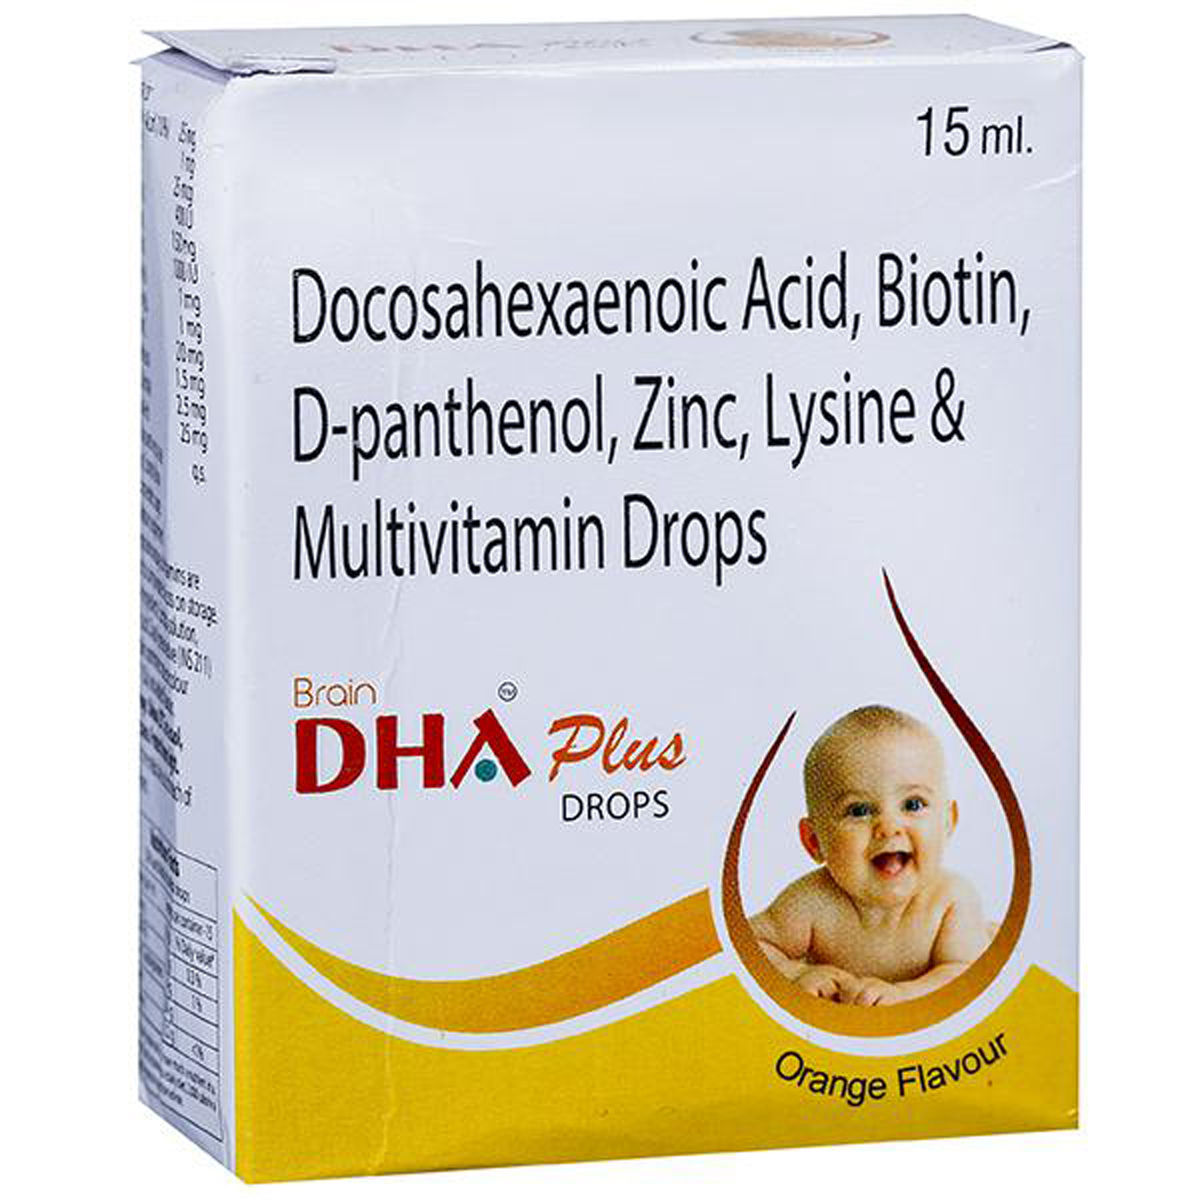 Buy Brain DHA Plus Orange Flav Drop 15 ml Online